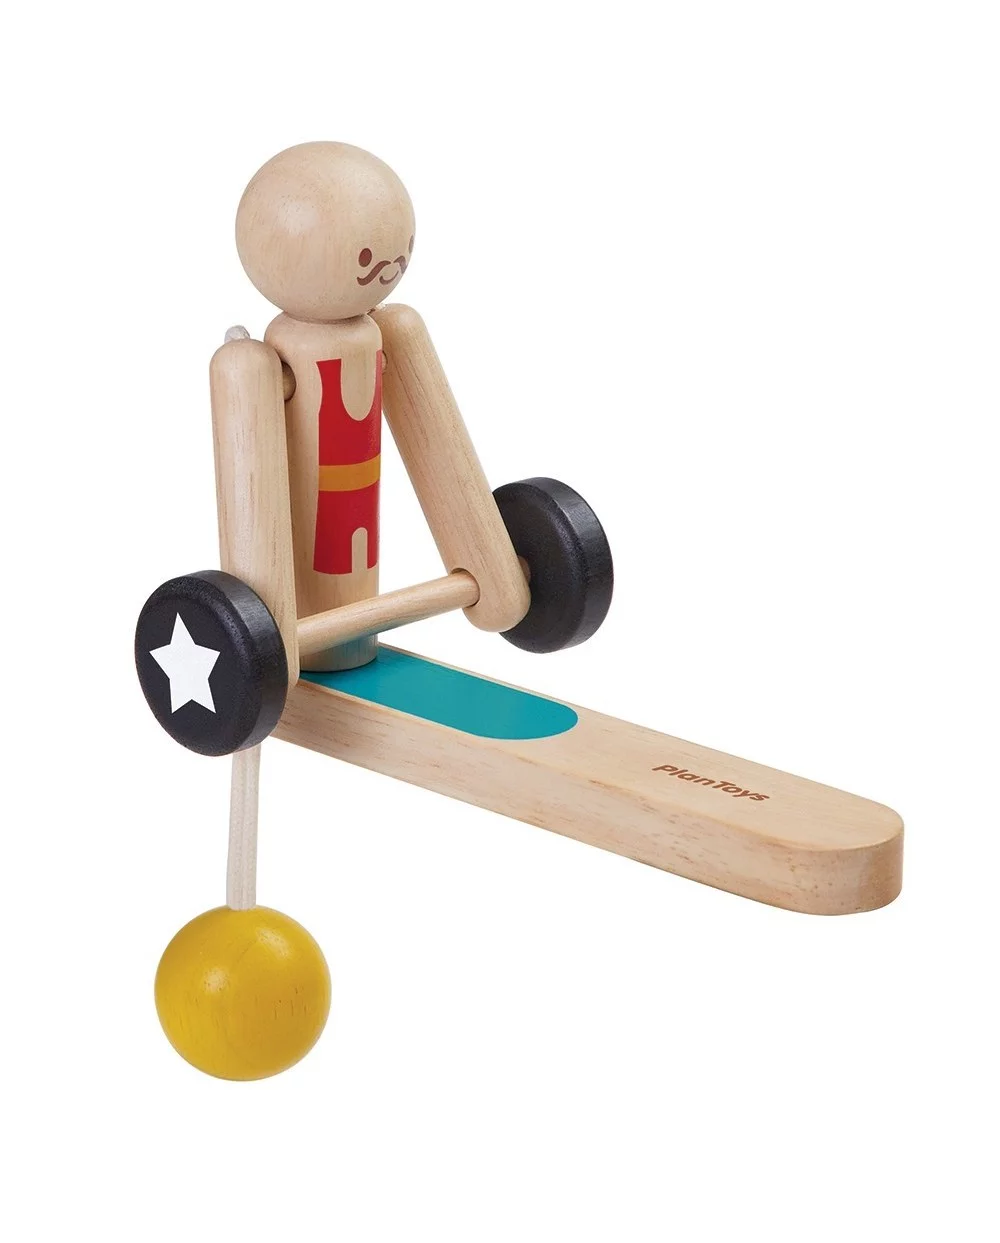 Dick toy. Деревянные игрушки. Деревянные игрушки для детей. Динамическая деревянная игрушка. Подвижные деревянные игрушки.